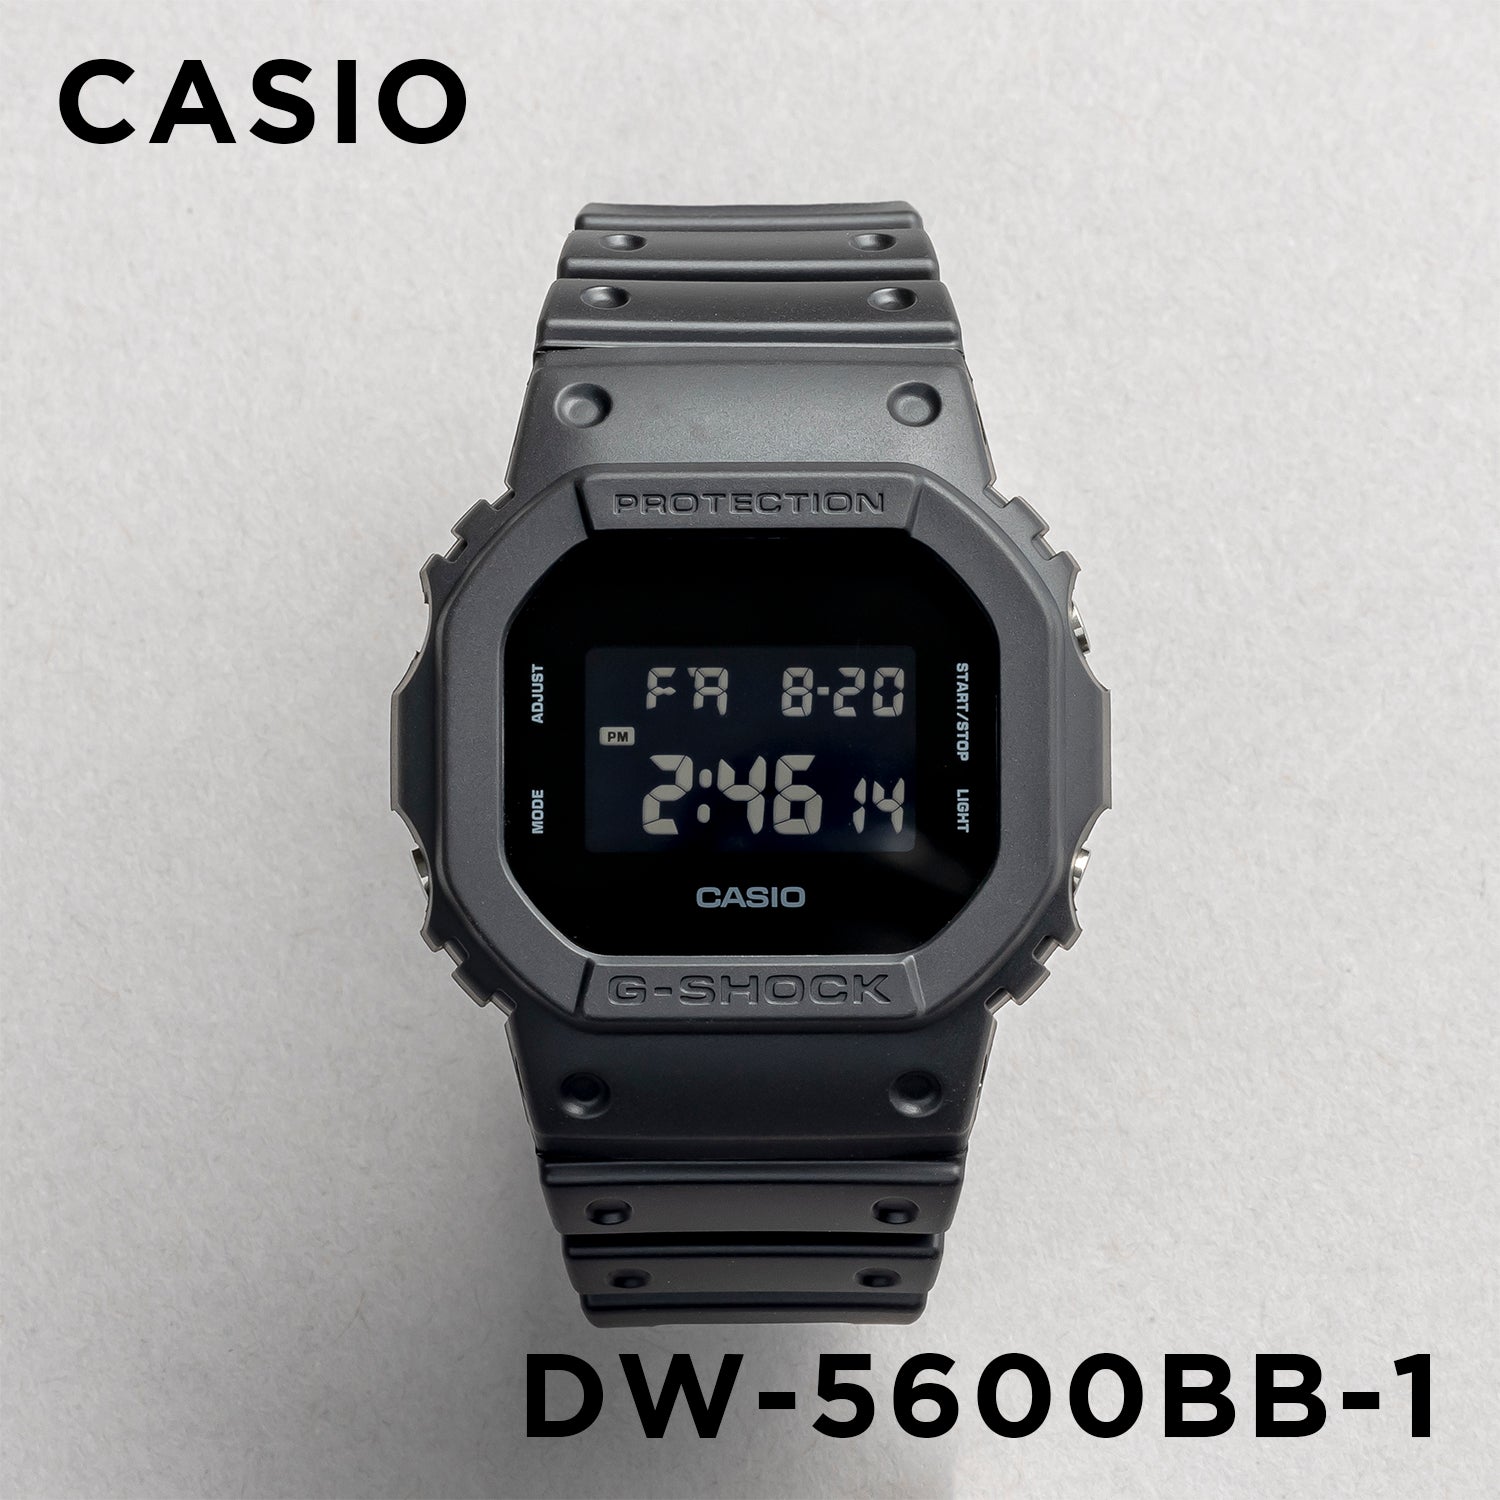 CASIO G-SHOCK DW-5600BB-1